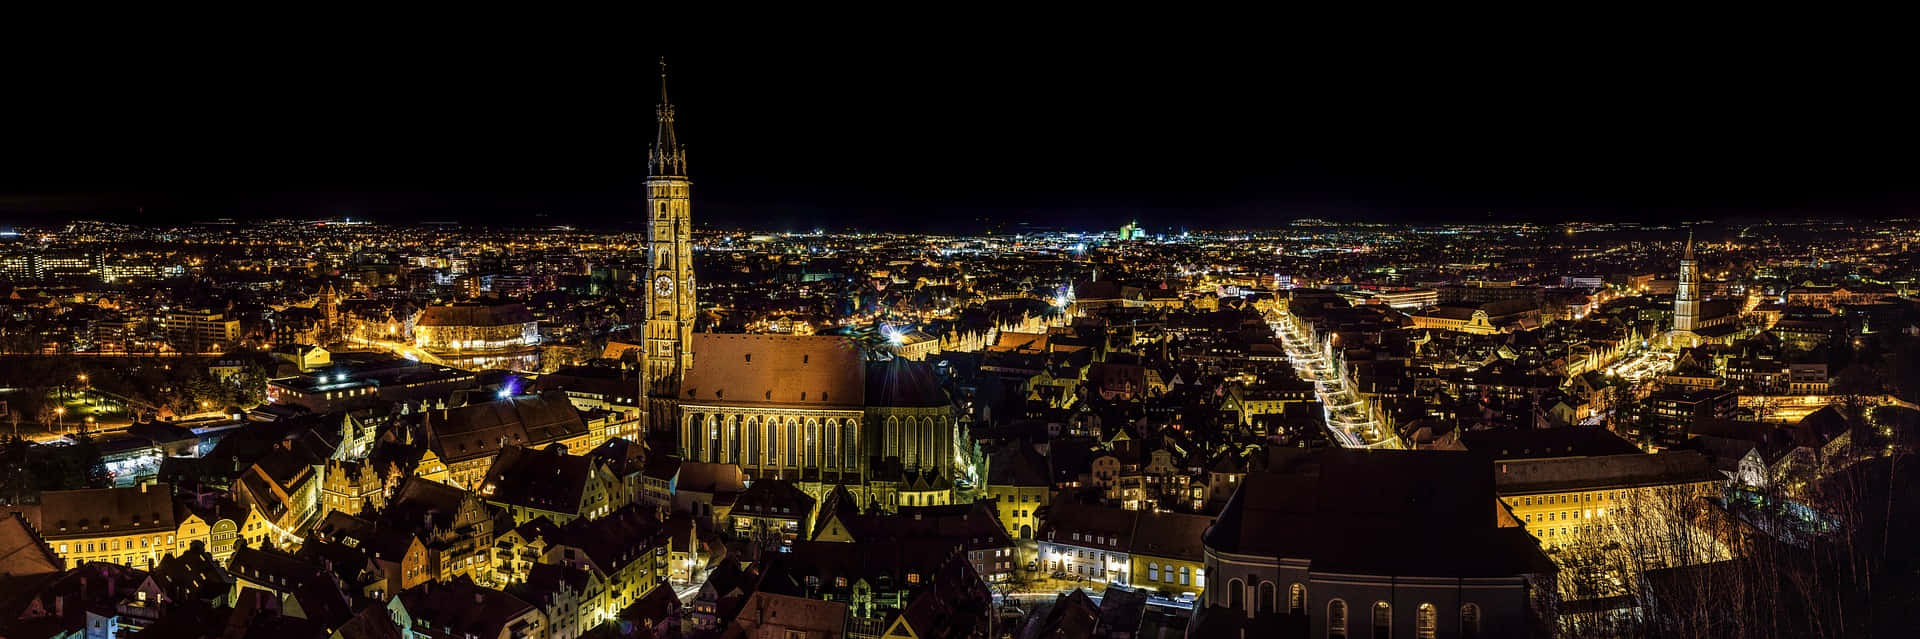 Goldenestadt Bei Nacht - Panoramabild